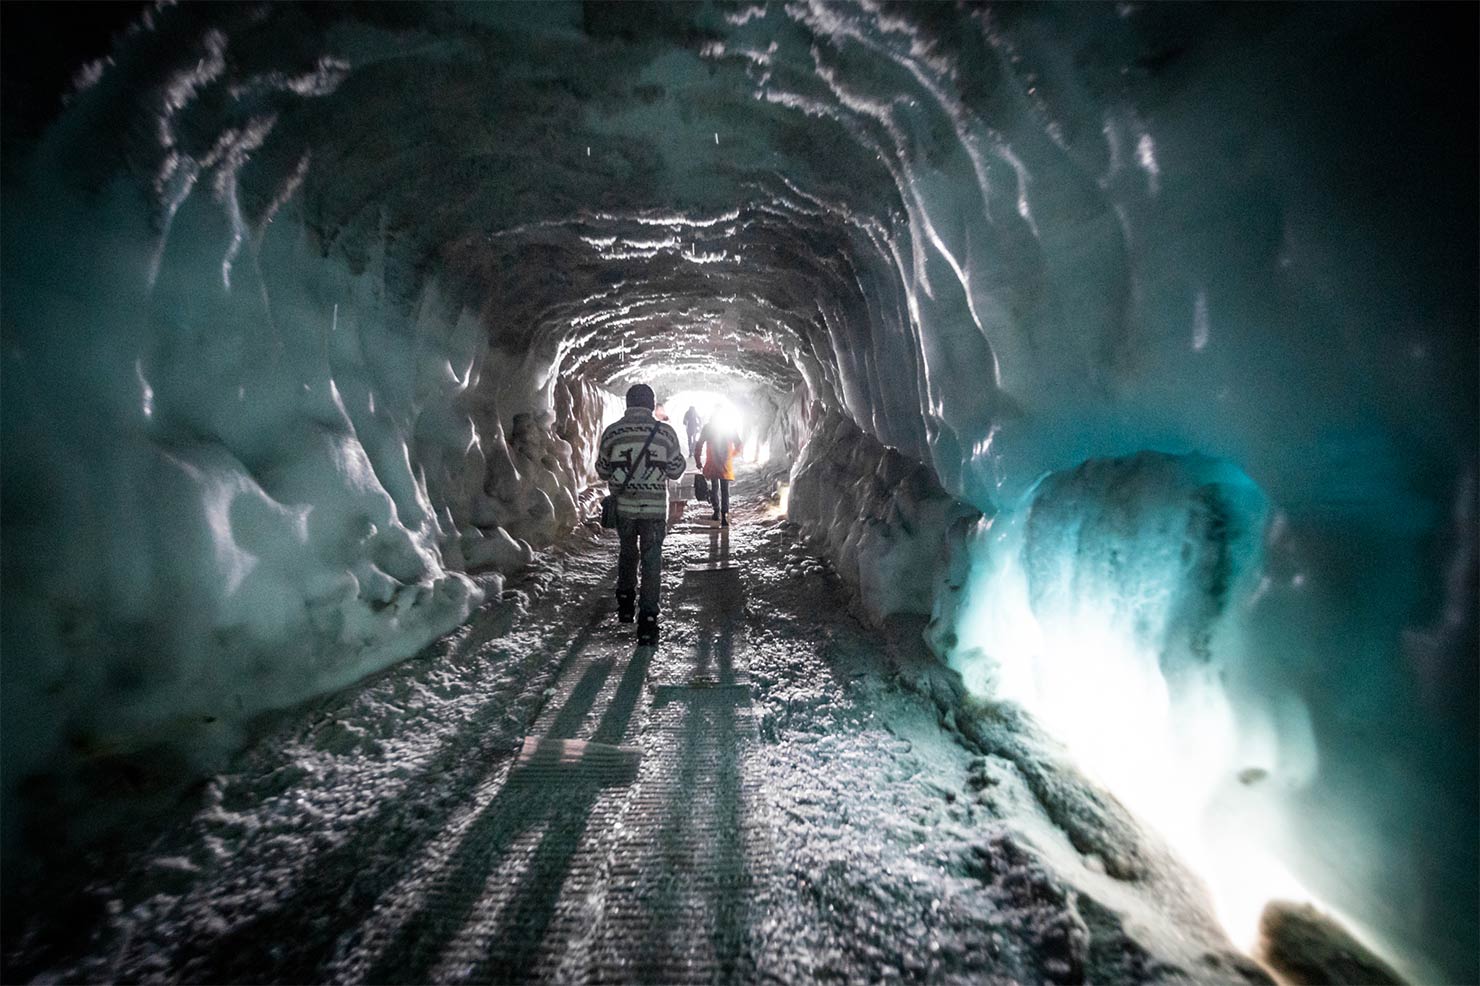 Langjökull 氷河の洞窟で、レイブパーティー「Into the Glacier」を開催